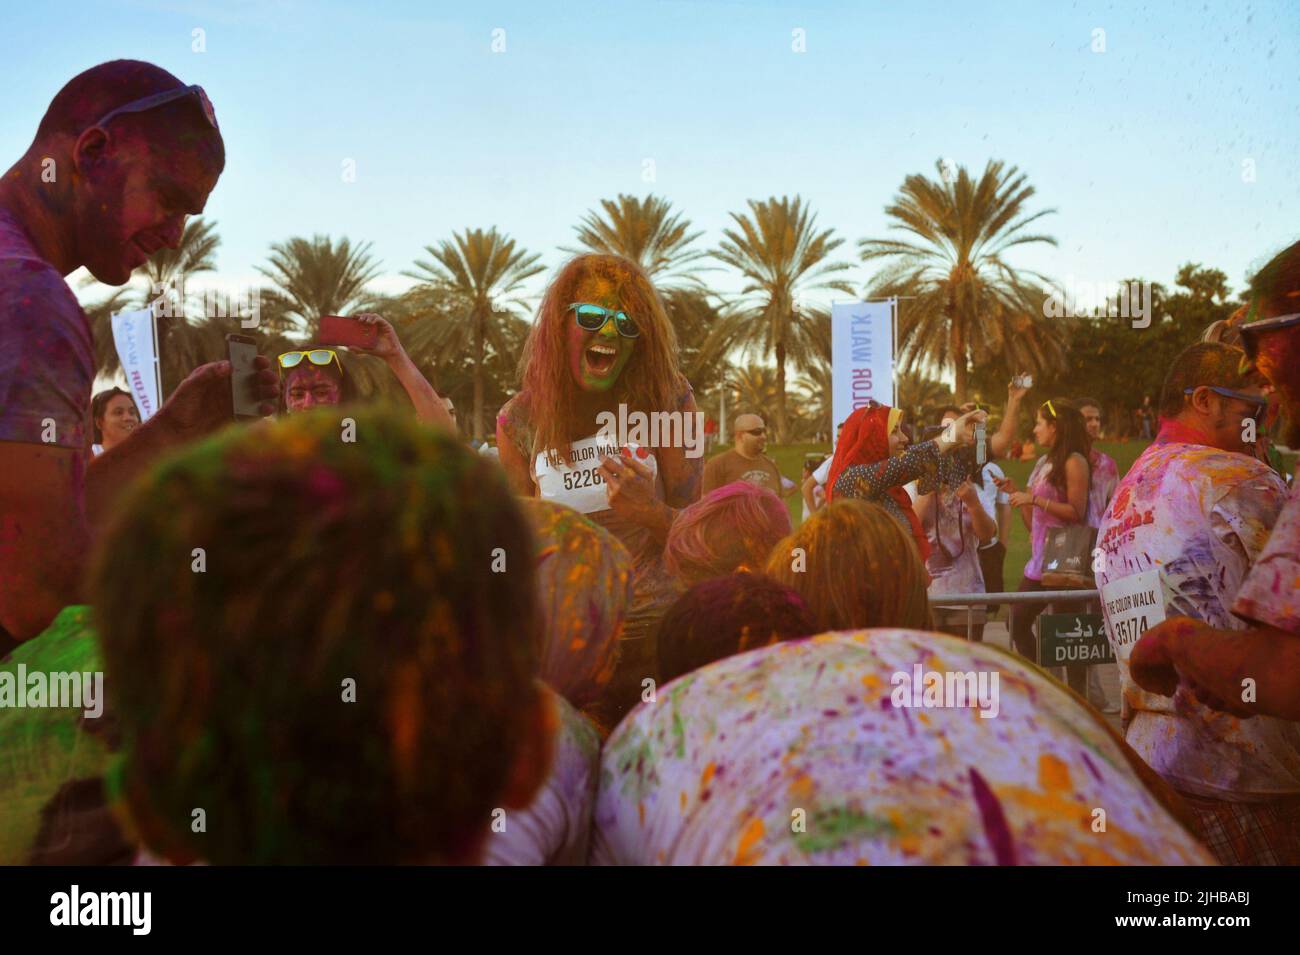 La joven caucásica se ríe de corazón viendo el caos que la rodea: Una multitud se reunió para agarrar más polvo de color en el Color Walk en Dubai, EAU. Foto de stock